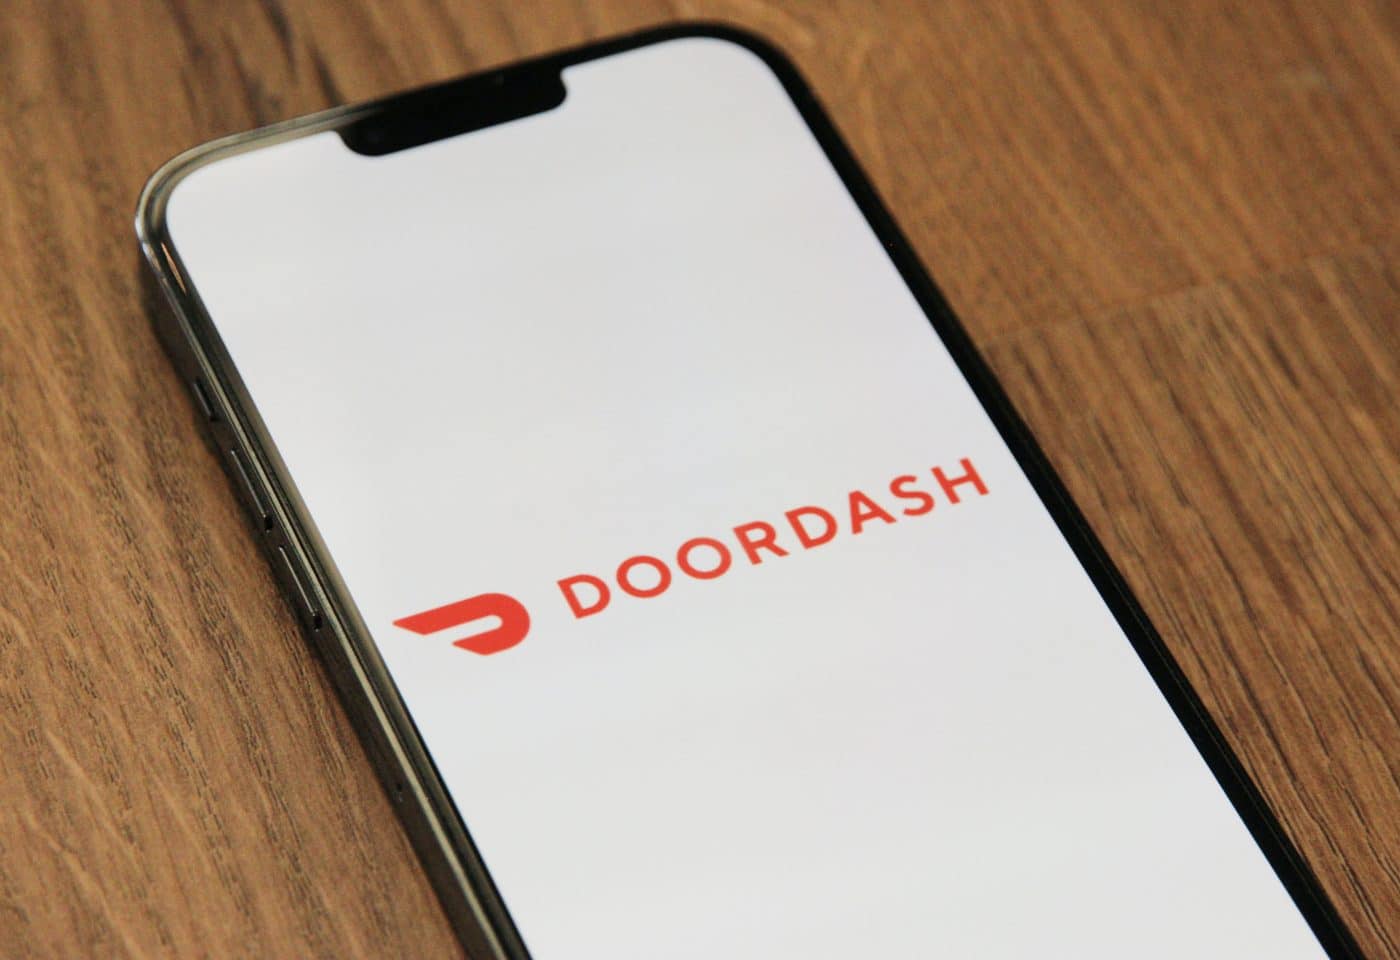 L'application DoorDash sur un iPhone.